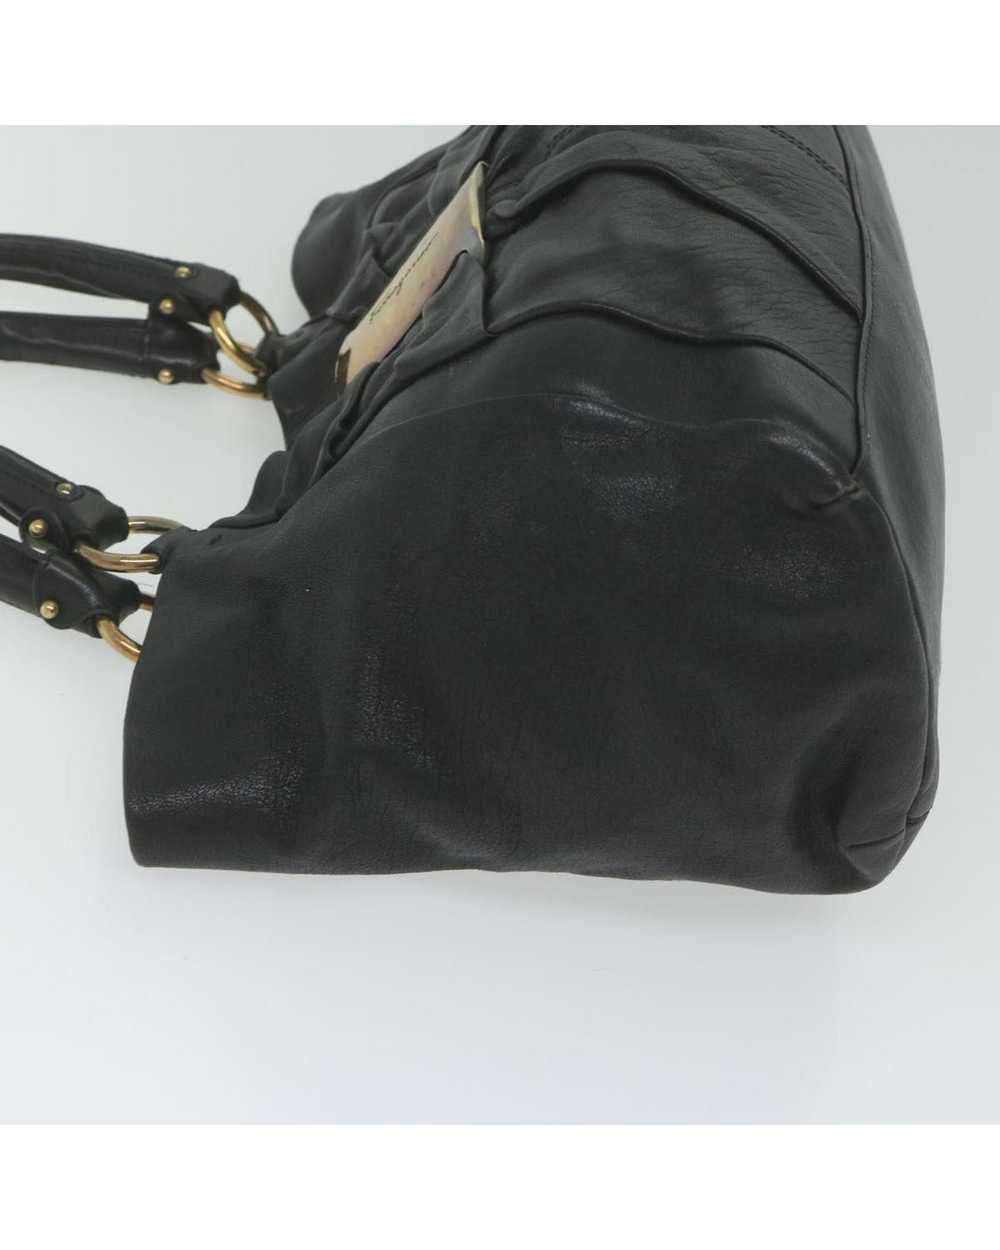 Salvatore Ferragamo Black Leather Tote Bag by Ita… - image 5